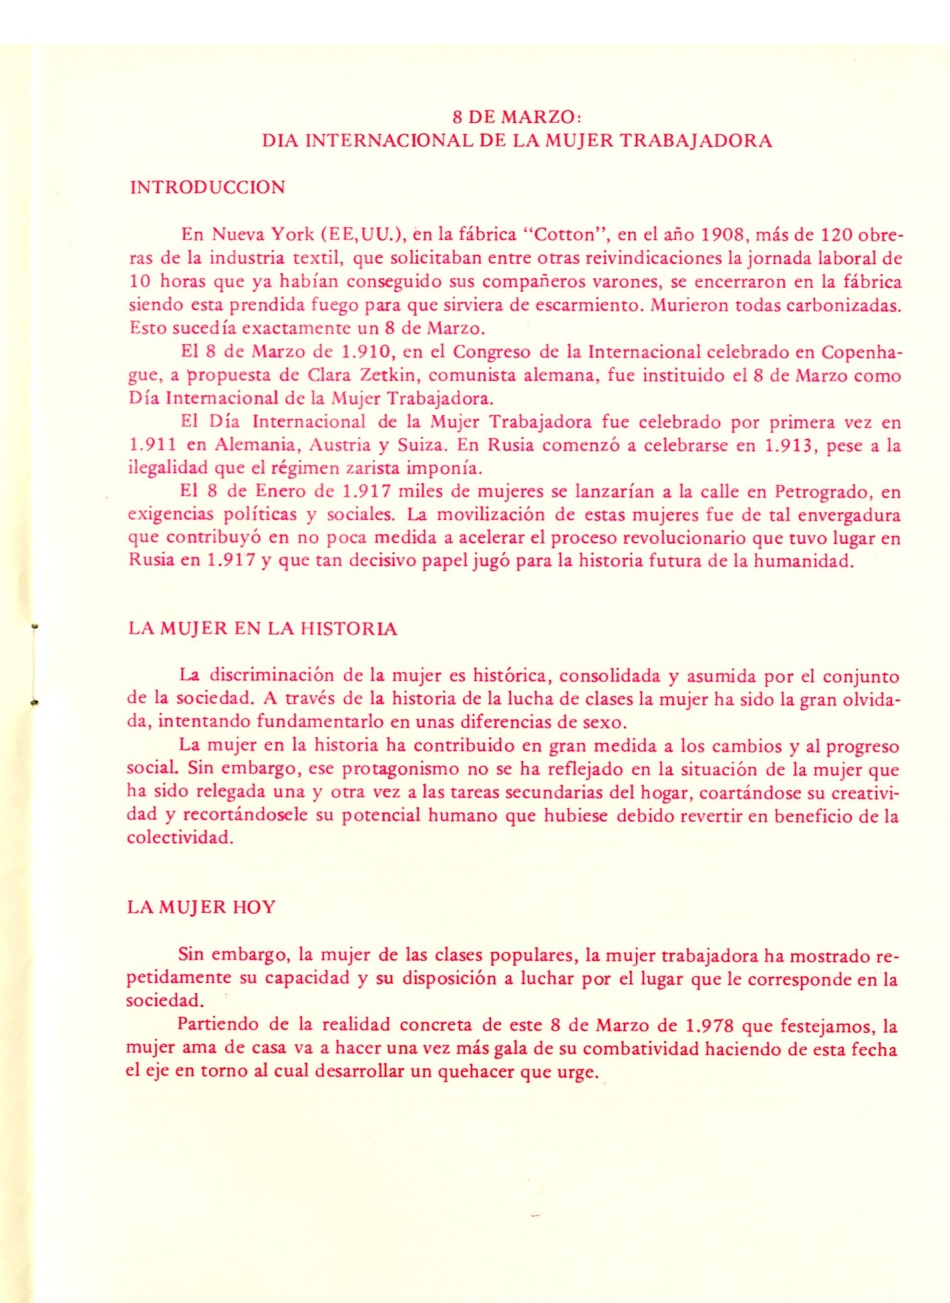 LOS COMUNISTAS ANTE LA CUESTIÓN DE LA MUJER. 8 DE MARZO DIA INTERNACIONAL DE LA MUJER TRABAJADORA. EN MEMORIA DE LAS MUJERES TRABAJADORAS ASESINADAS EN NUEVA YORK EN 1908 EN LA FABRICA COTTON. EN MEMORIA DE TODAS LAS MUJERES TRABAJADORAS.